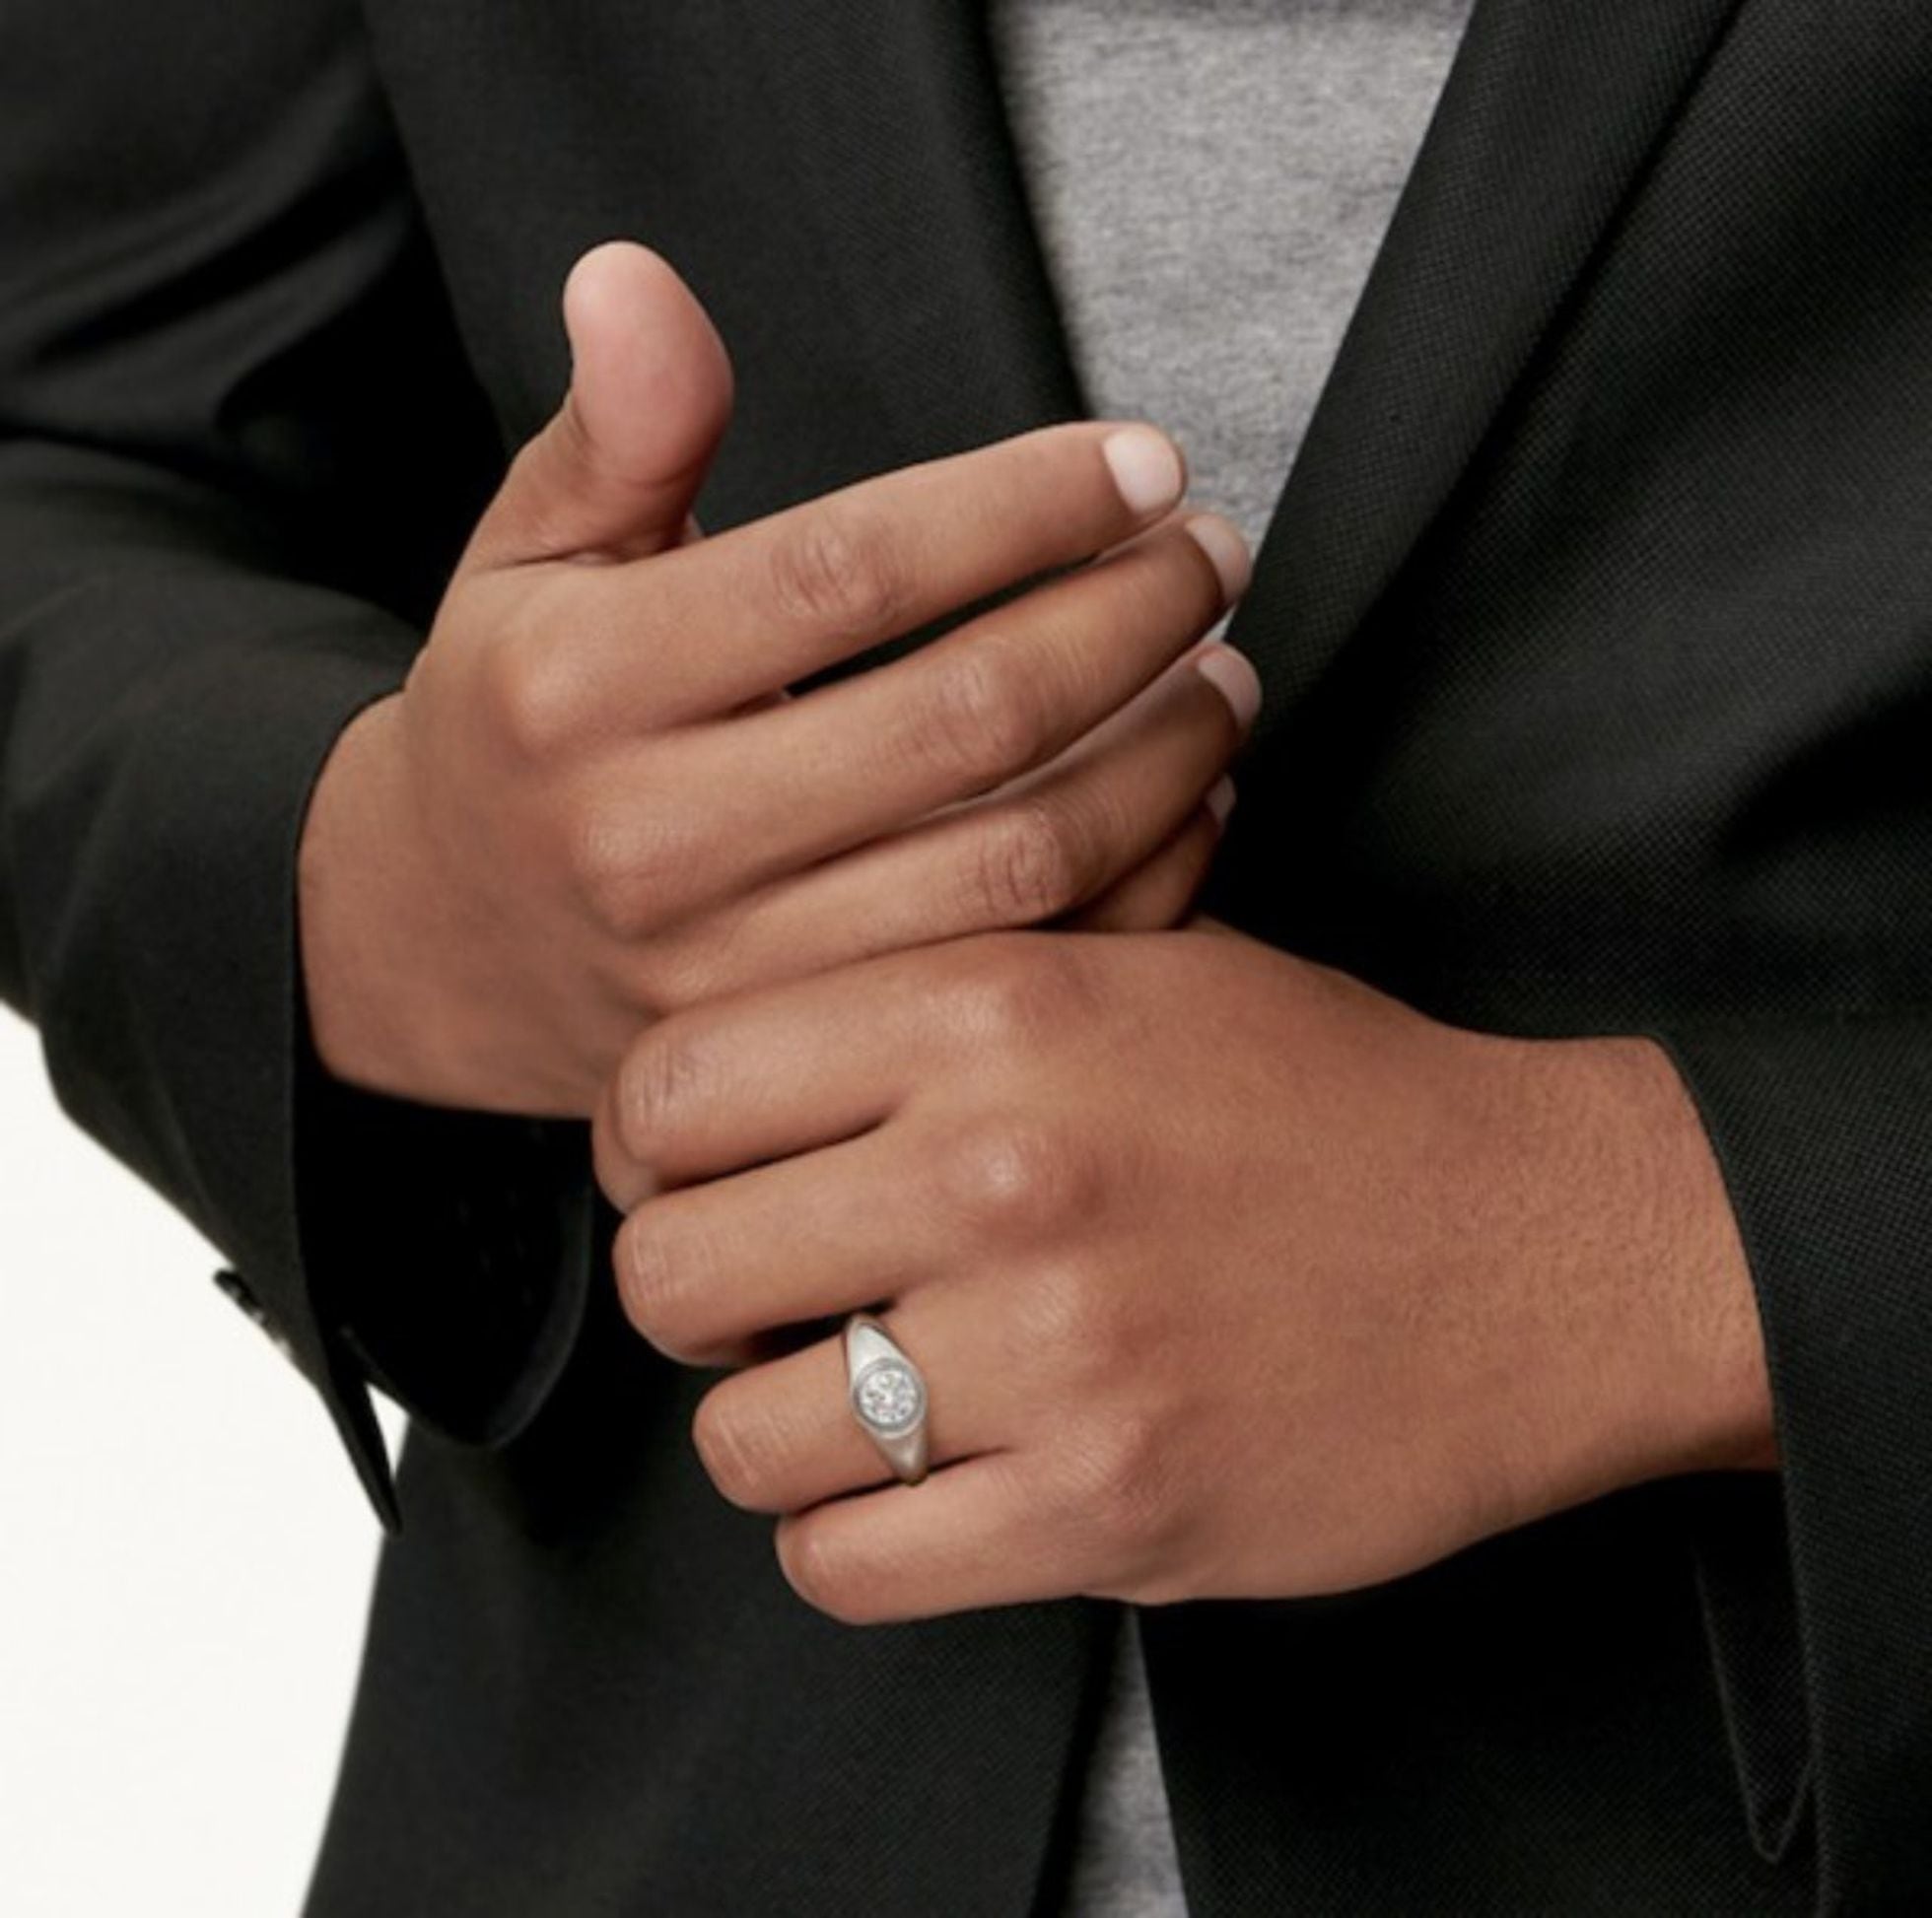 Tiffany lanza el primer anillo de compromiso para Gente | PAÍS